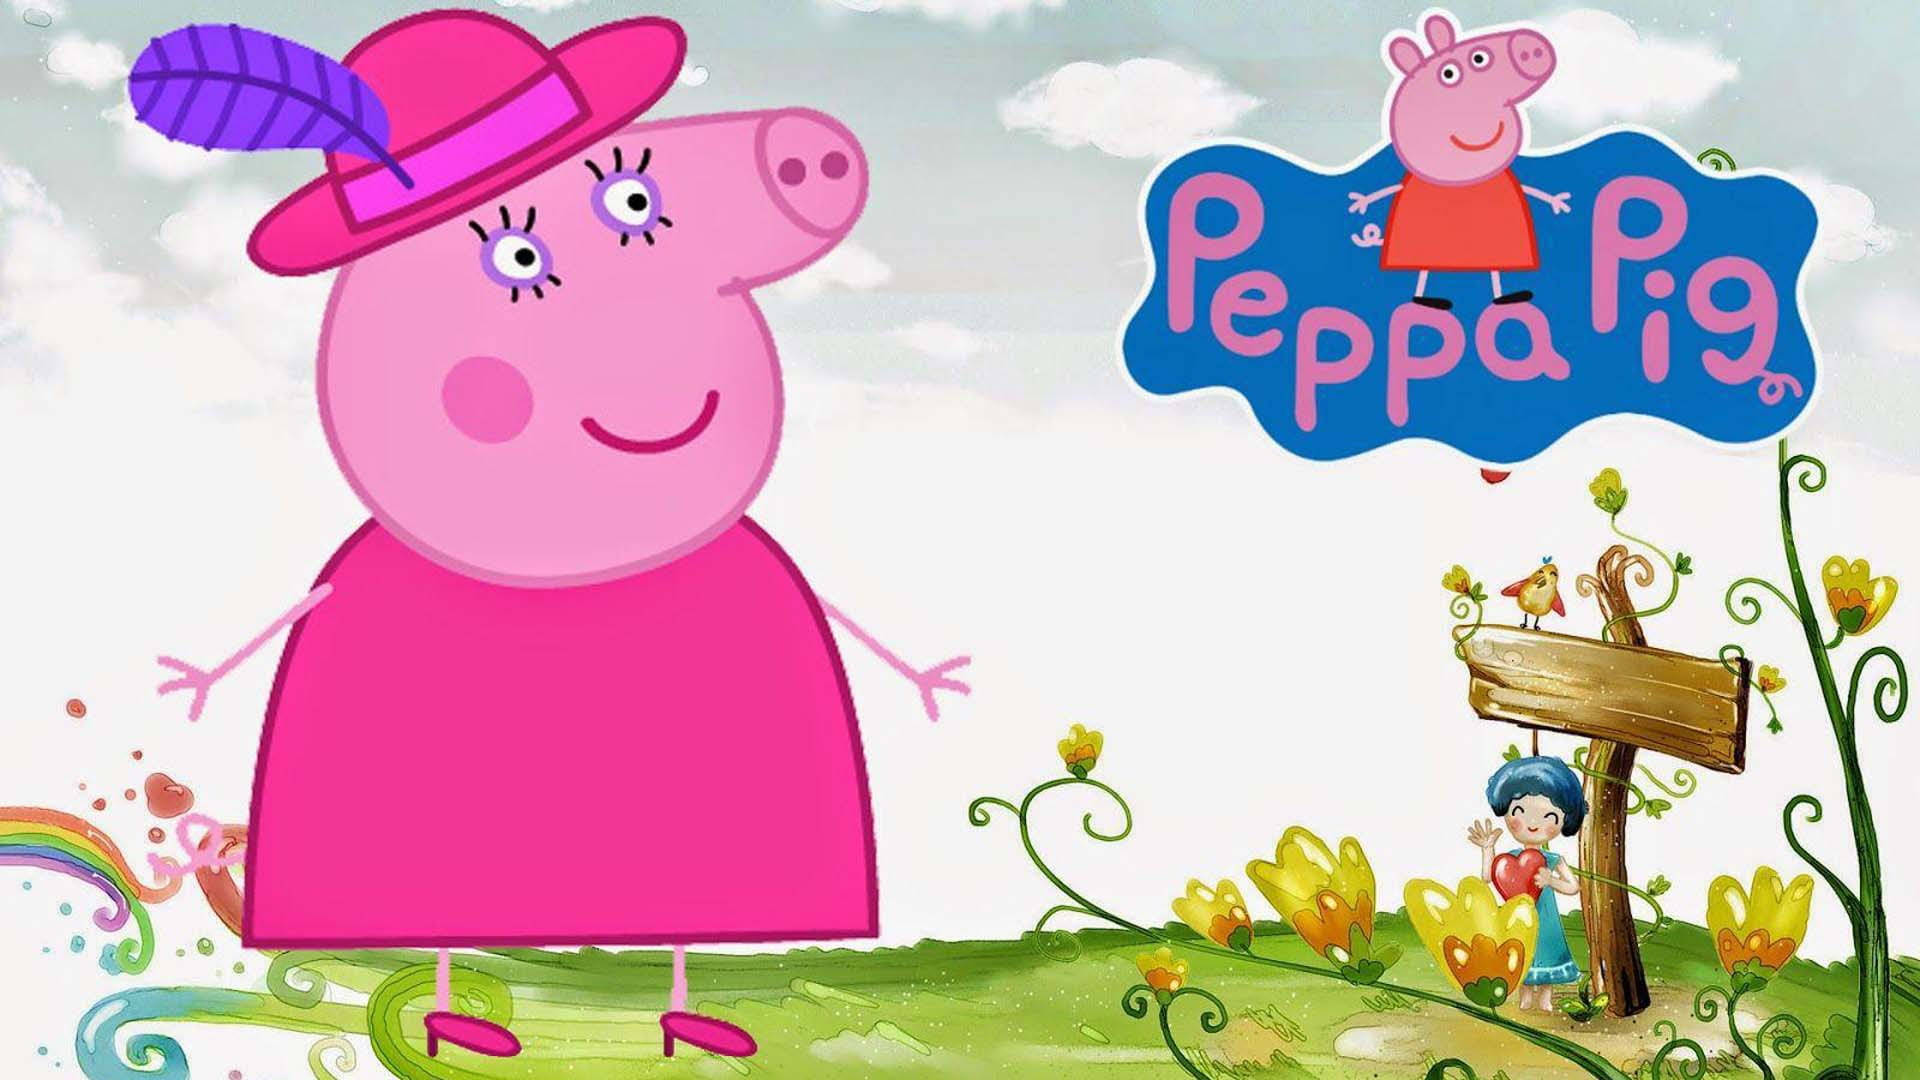 Peppa Pig Grandma Wallpaper